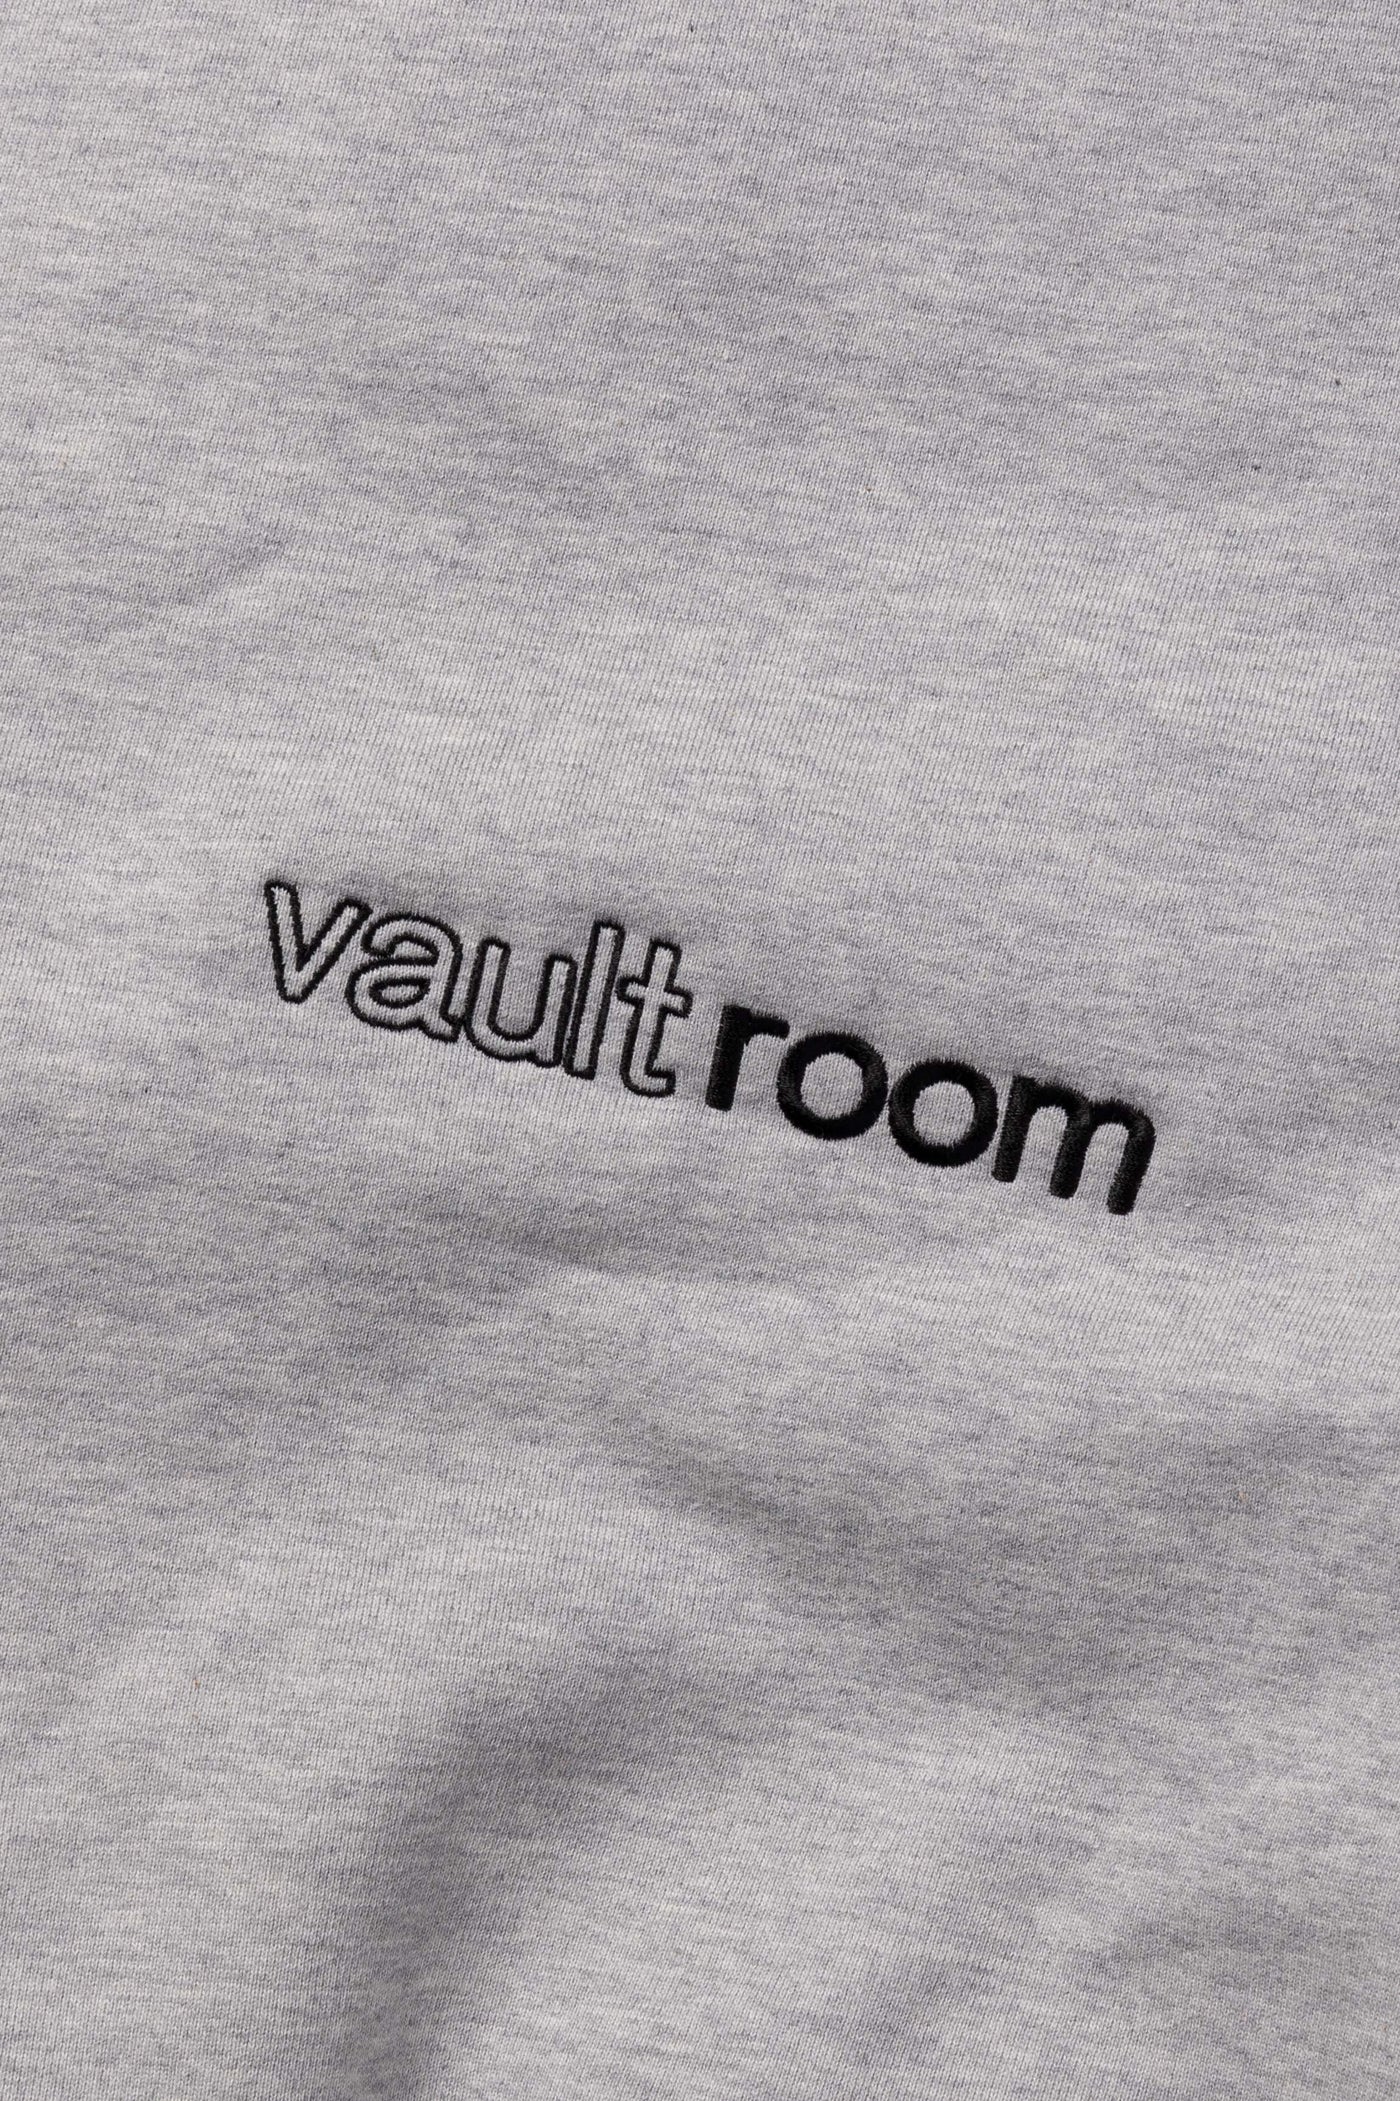 11,220円vaultroom ROM ONLY HOODIE / GRY